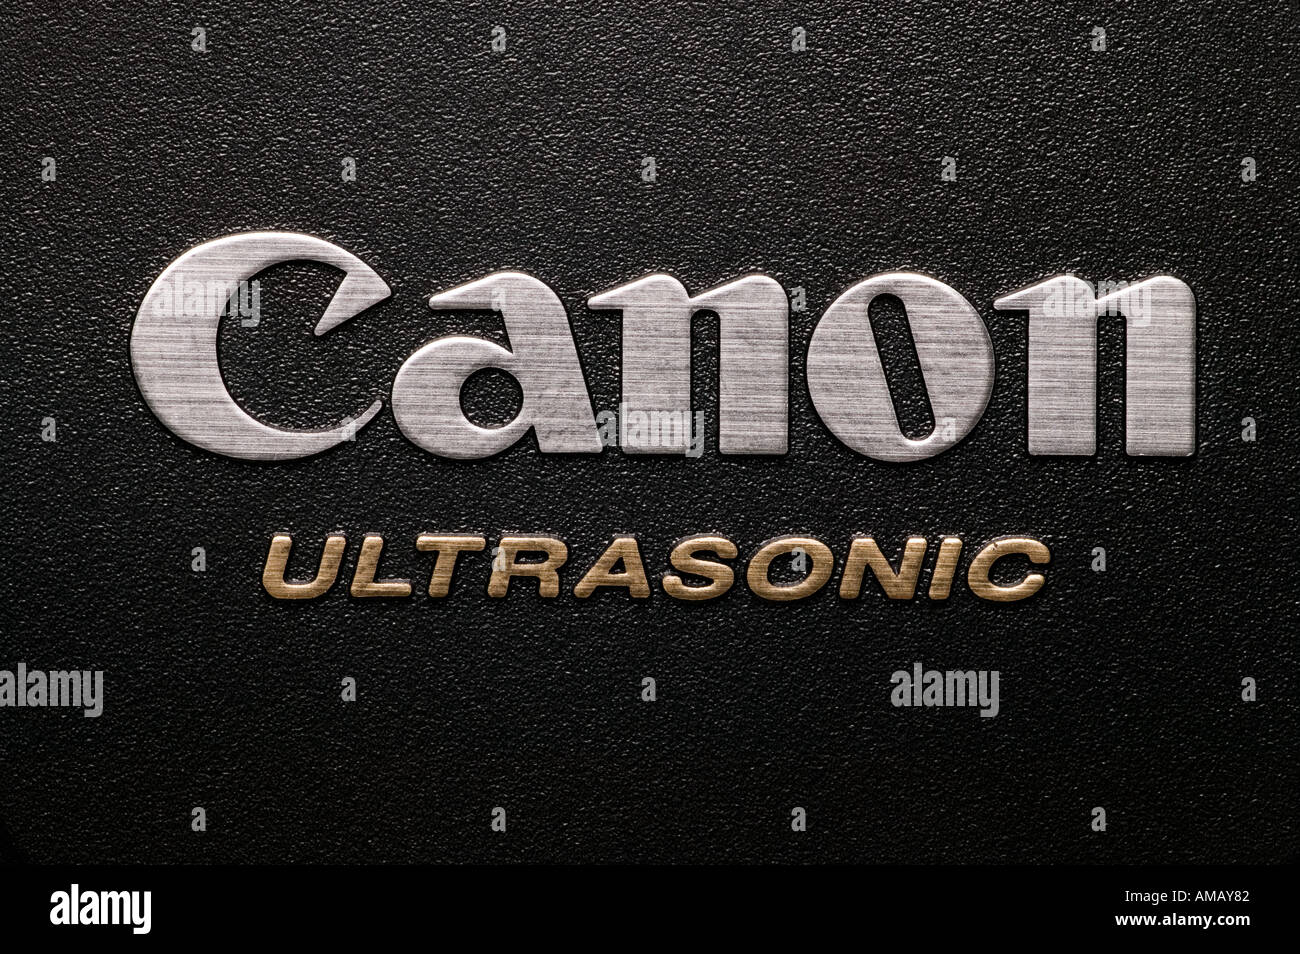 Canon cameras Japan logo Stock Photo